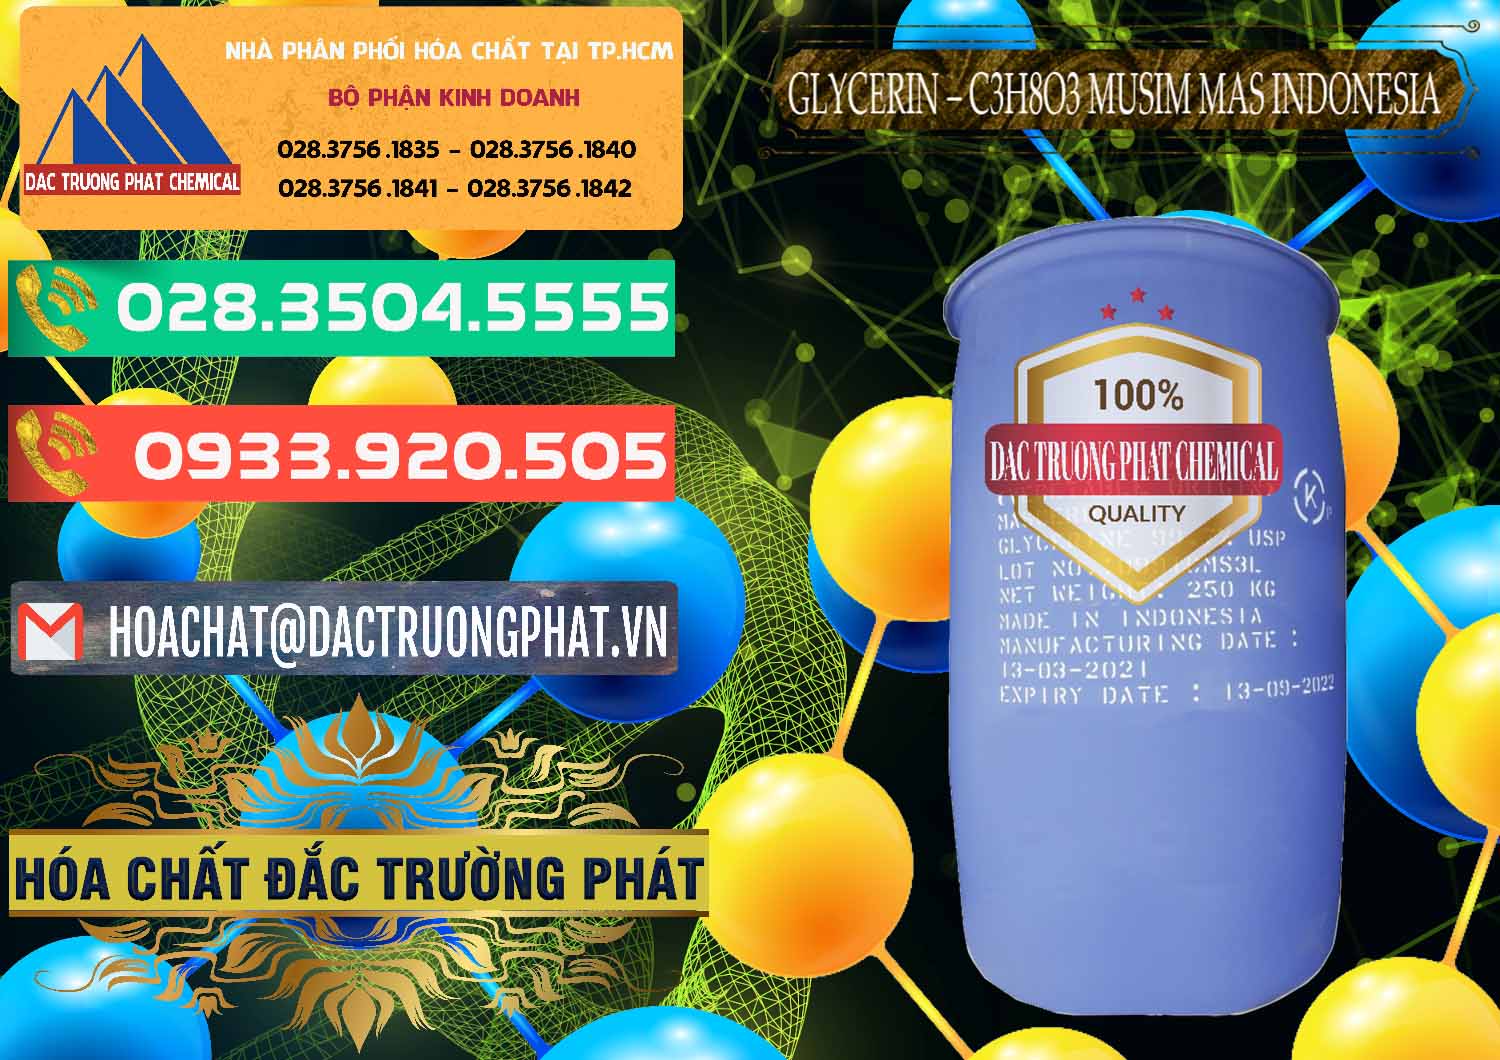 Nơi bán Glycerin – C3H8O3 99.7% Musim Mas Indonesia - 0272 - Công ty bán _ cung cấp hóa chất tại TP.HCM - congtyhoachat.com.vn